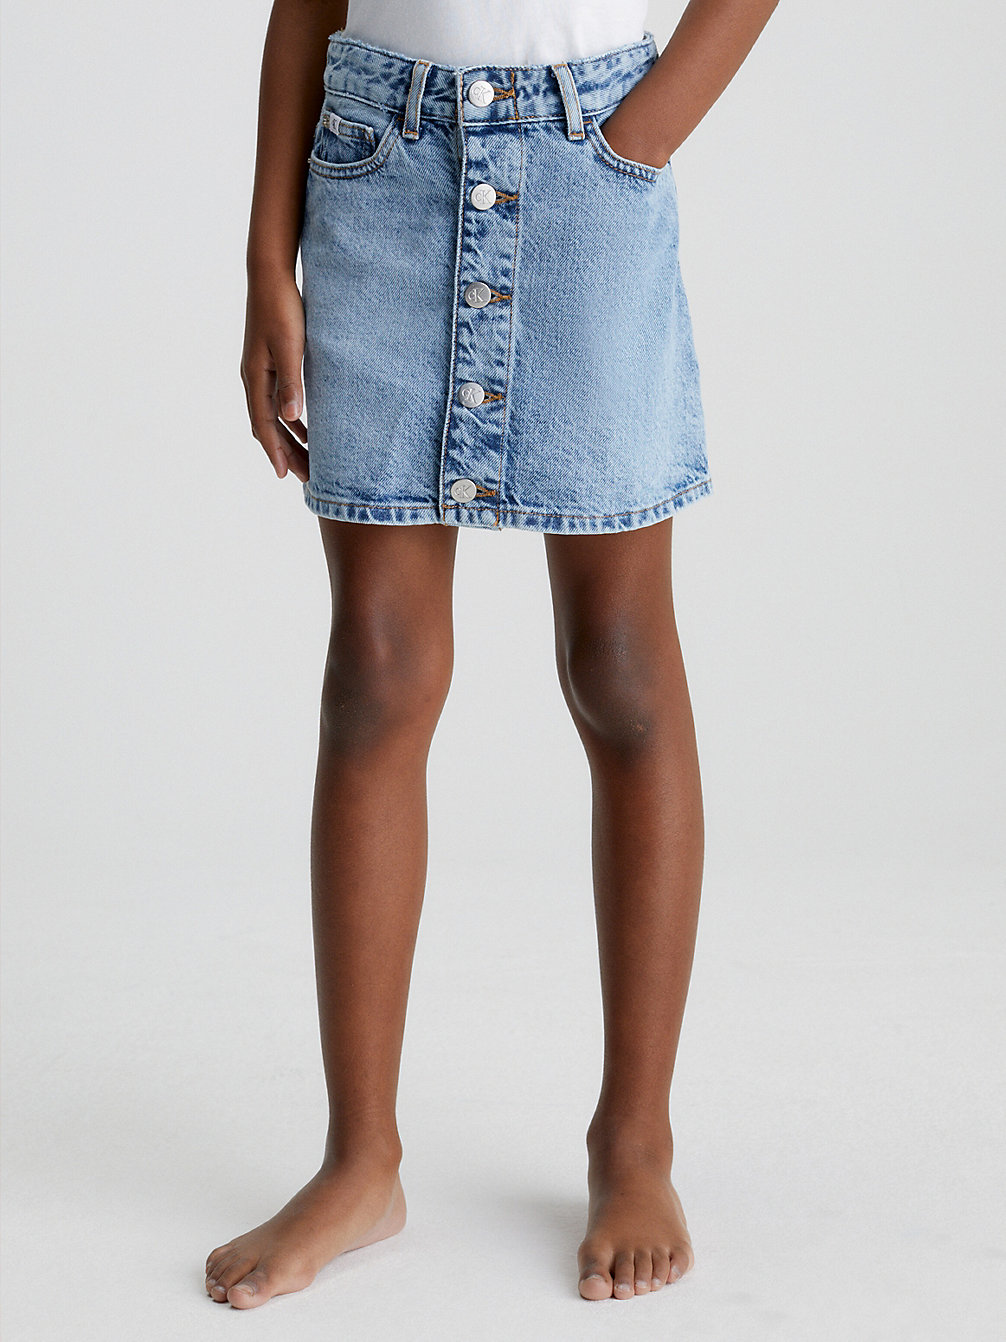 SALT PEPPER LIGHT Denim Skirt undefined girls Calvin Klein